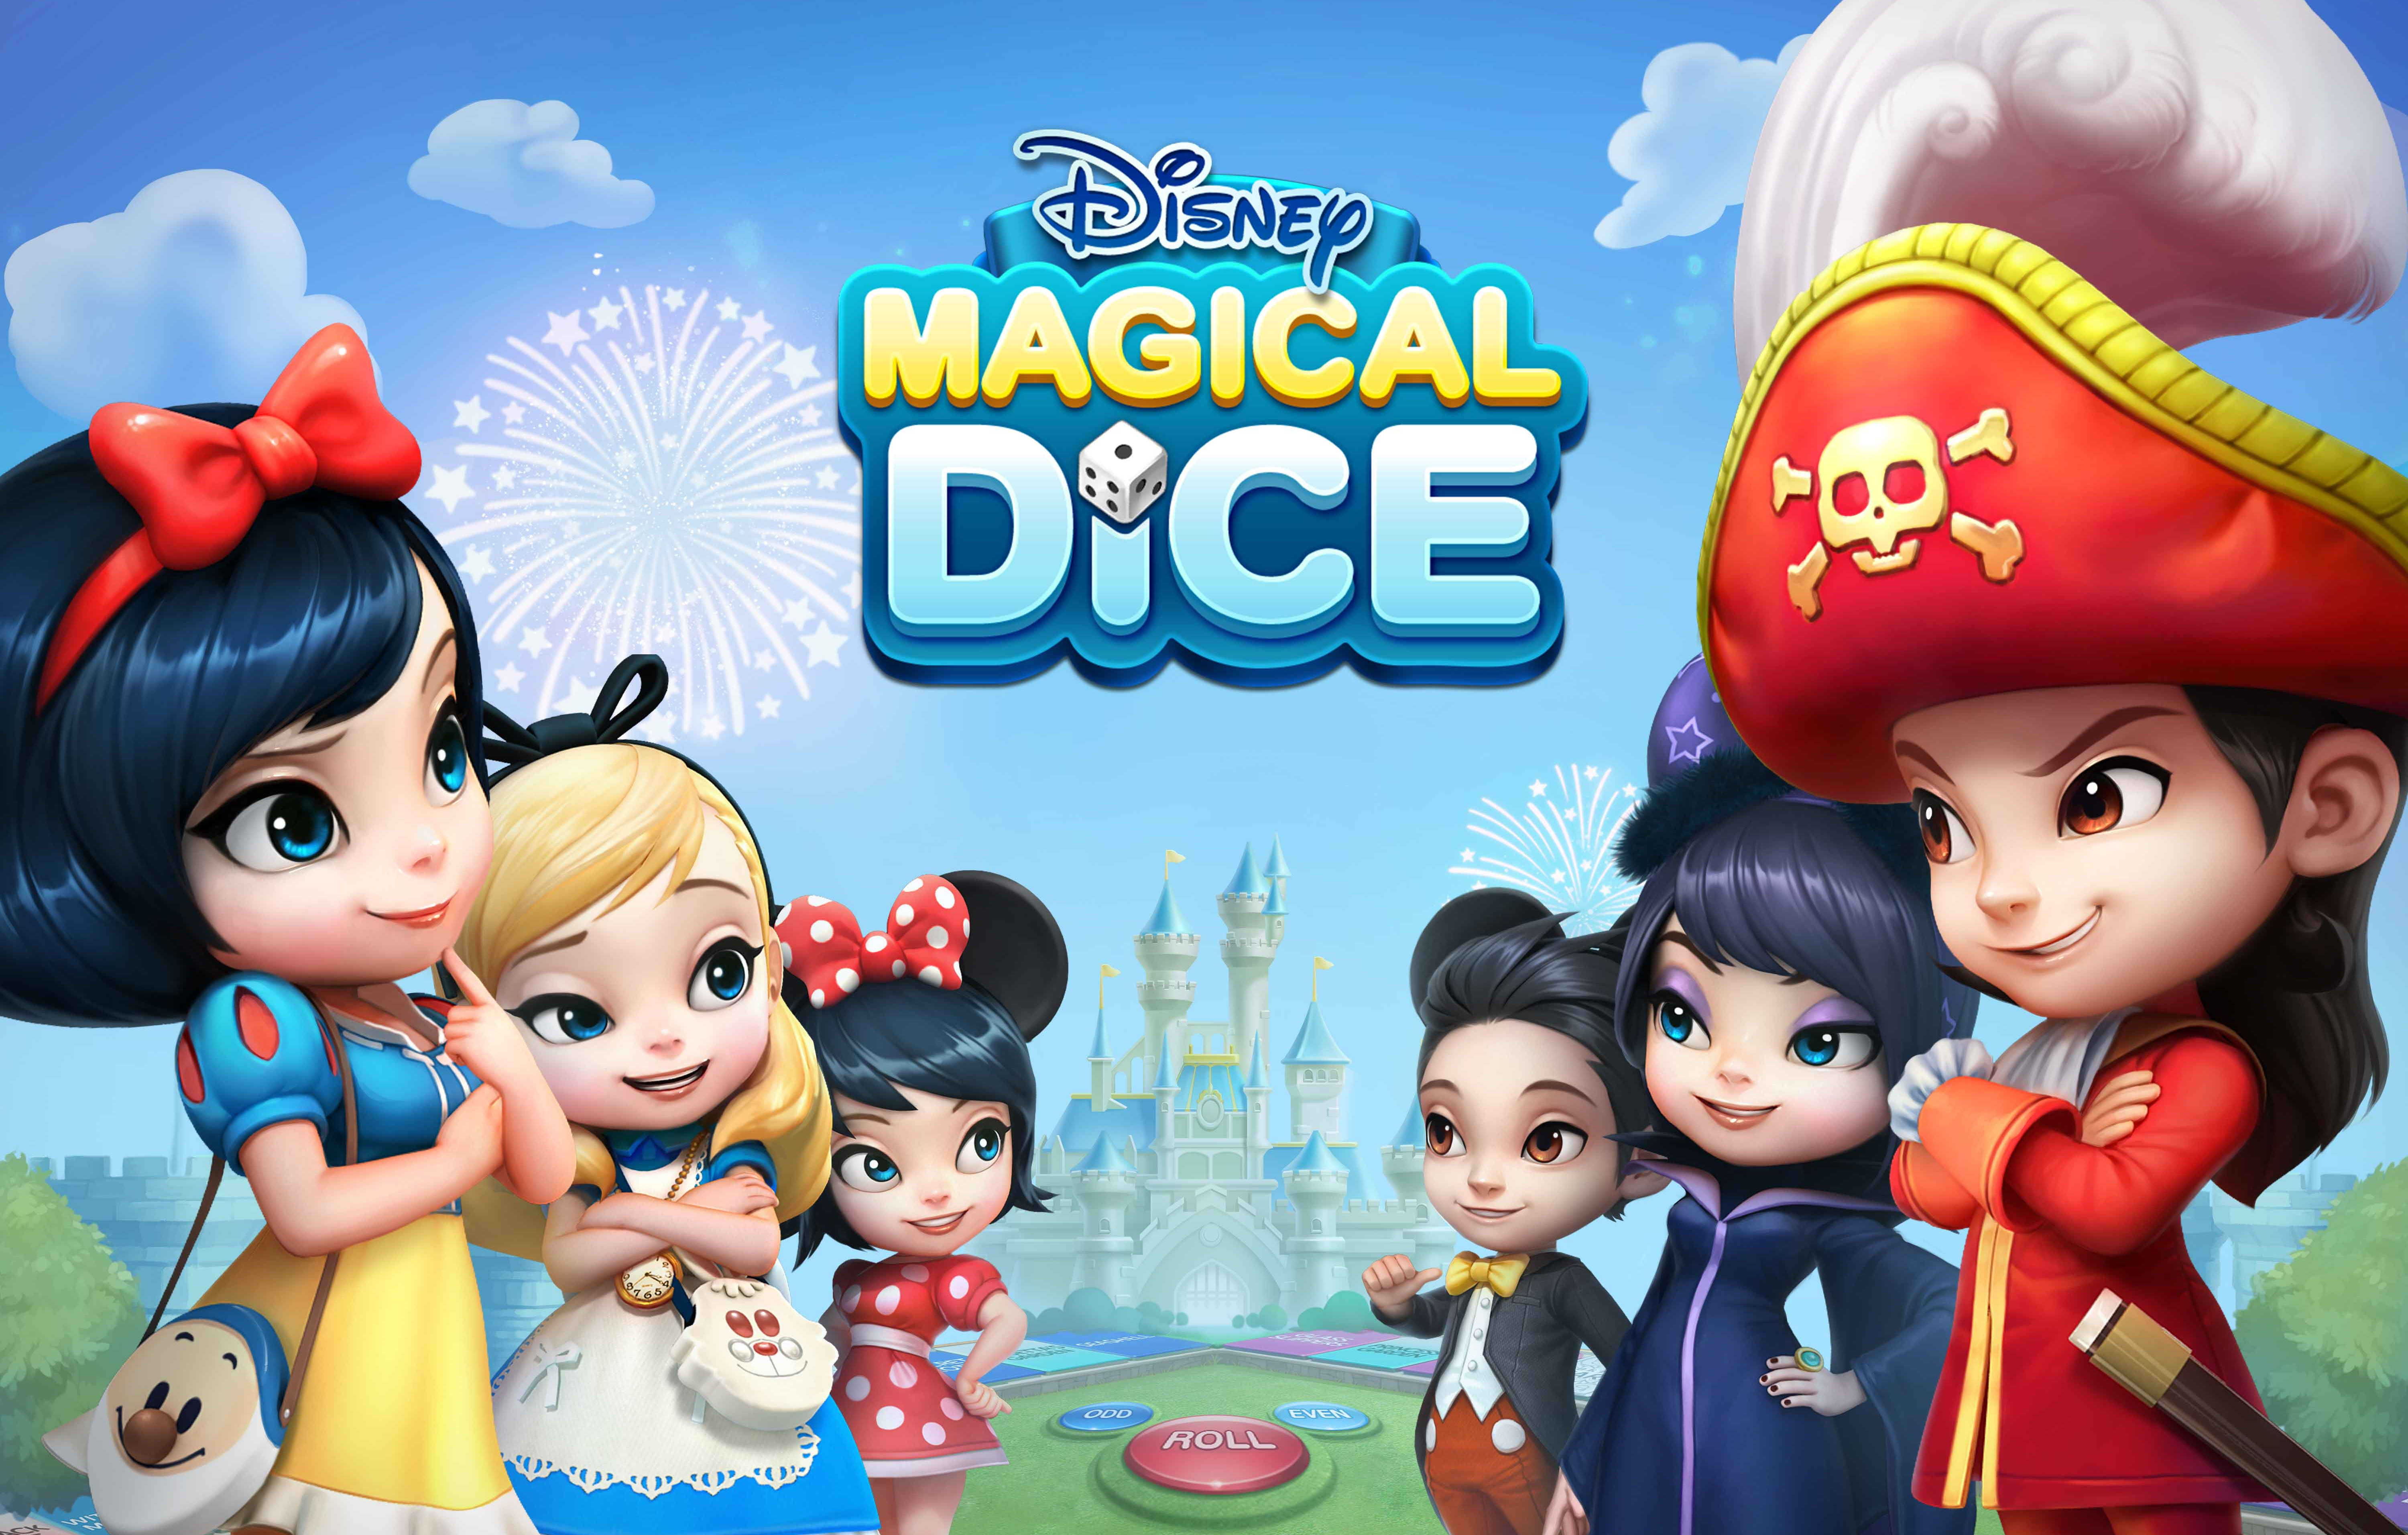 디즈니 매지컬 다이스 에피소드1 (Disney Magical Dice - Episode 1)